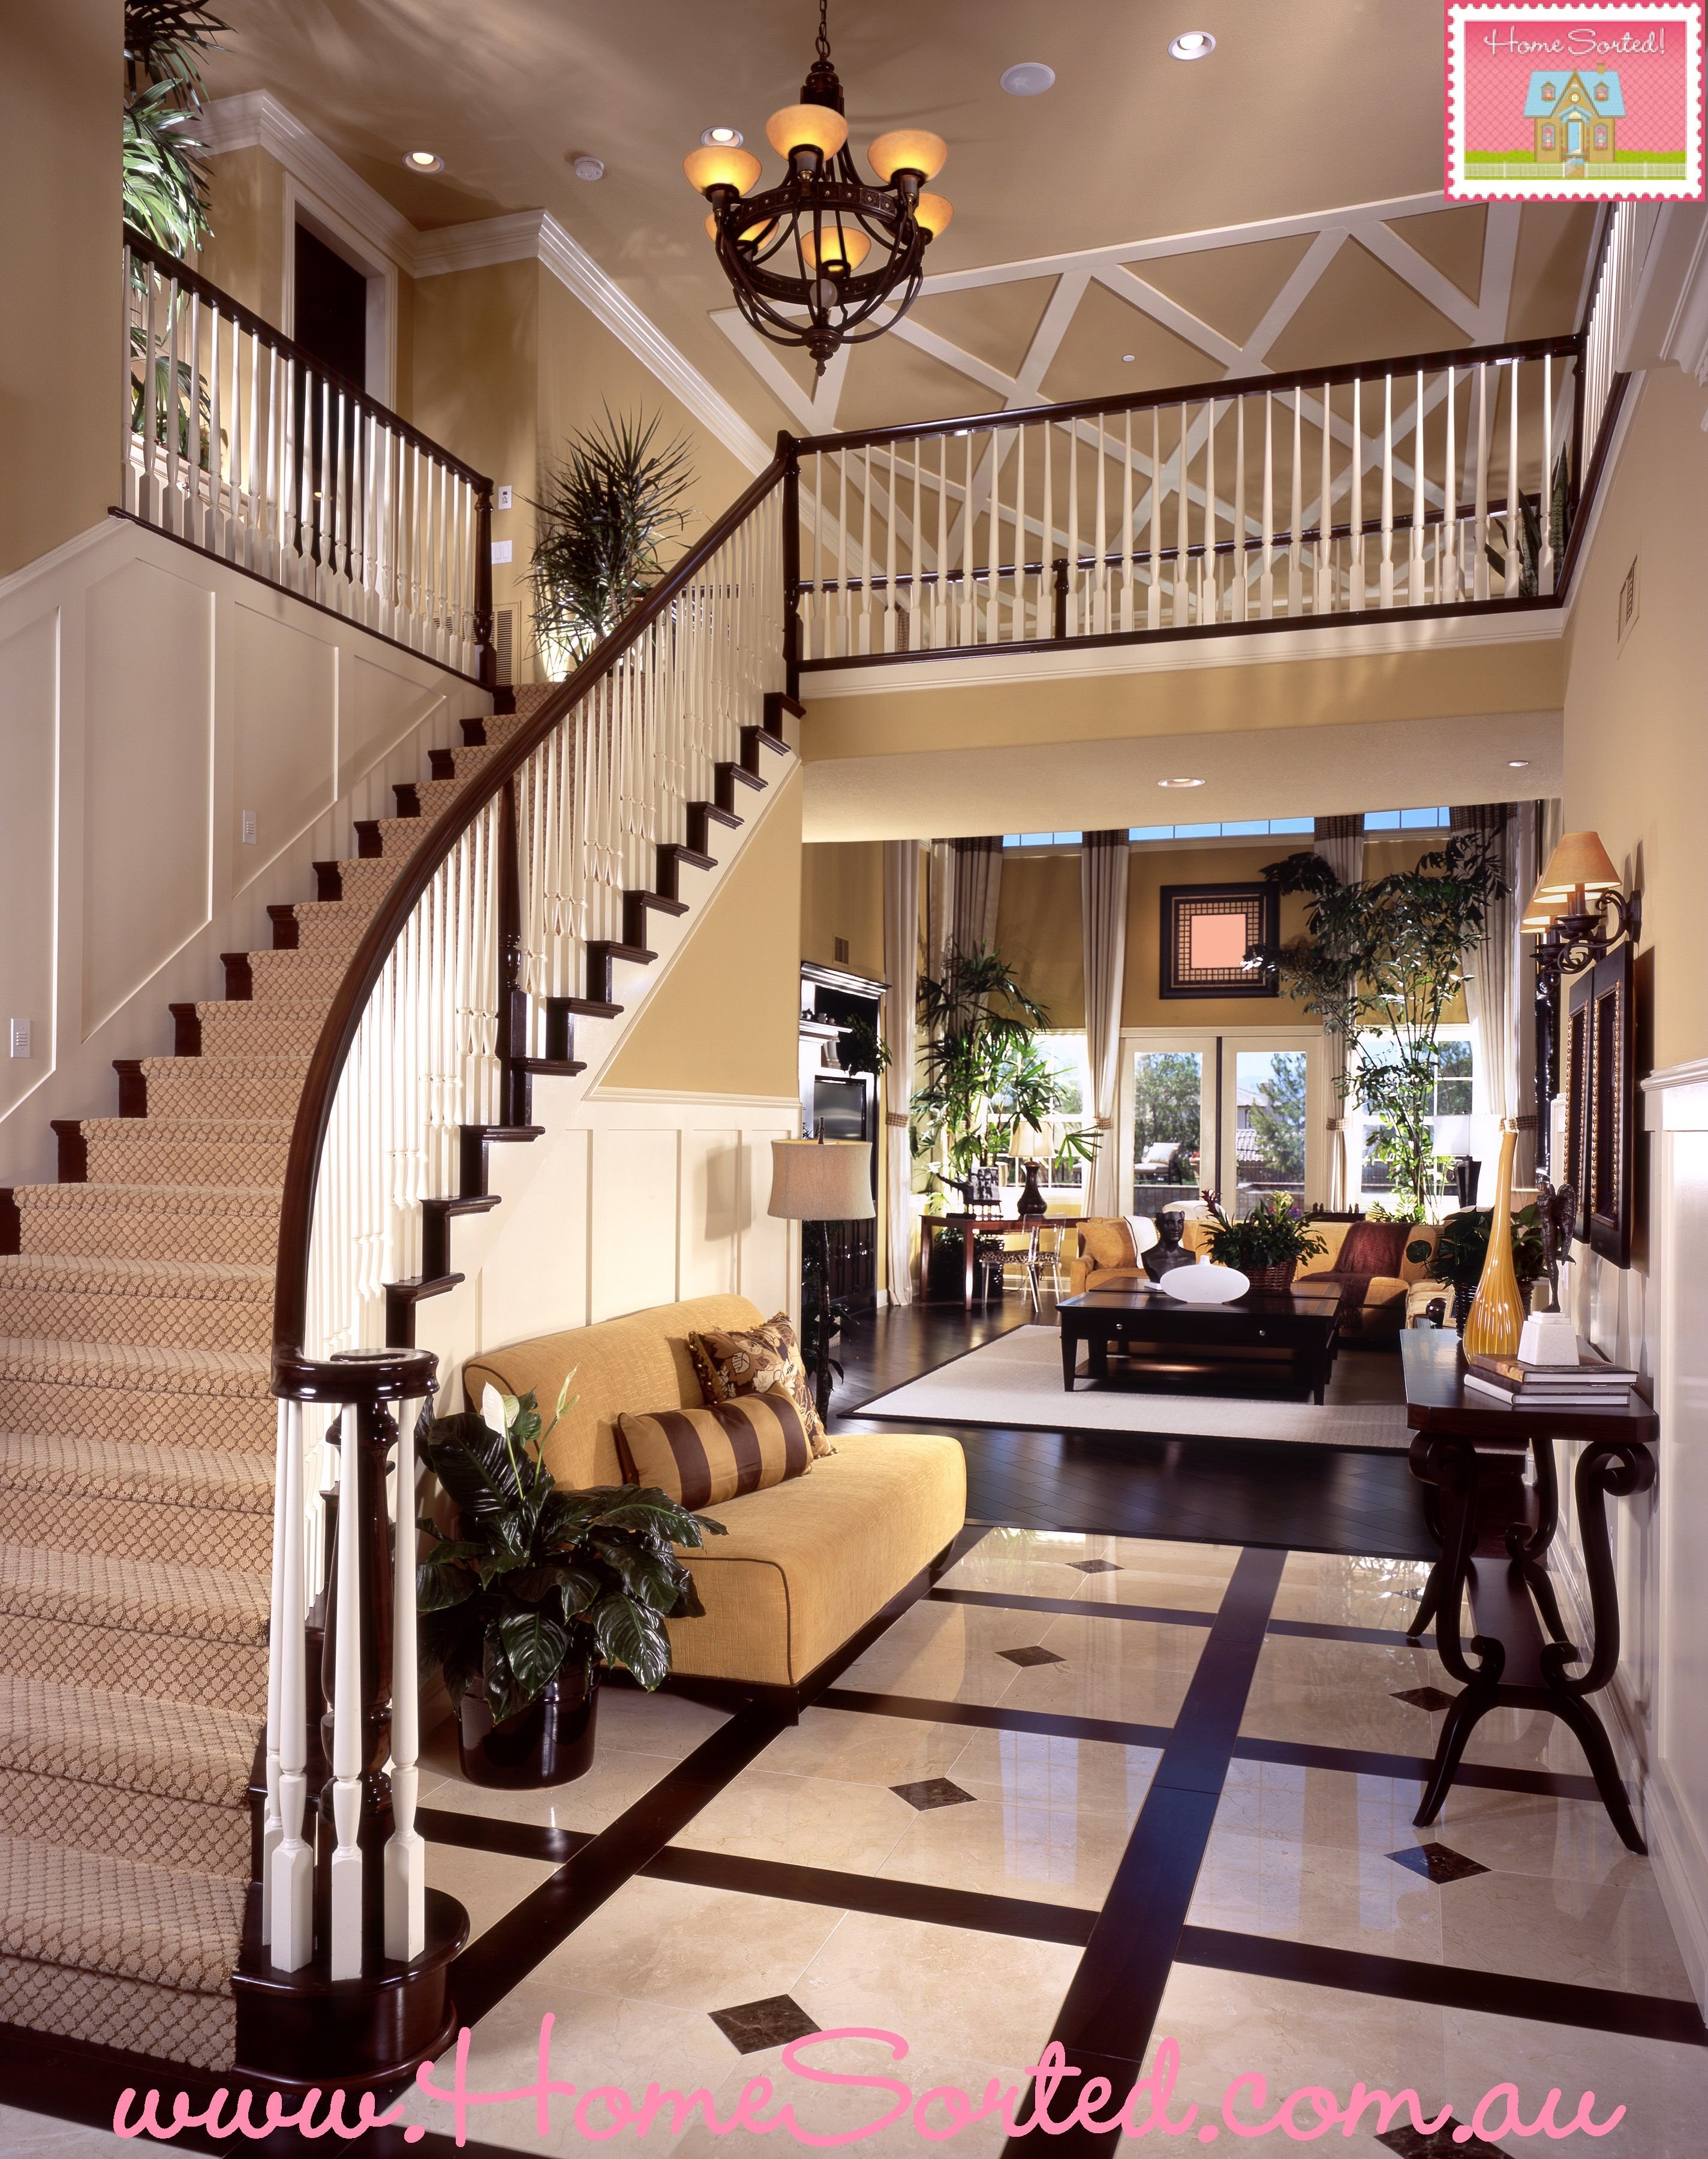 Четвертый этаж в доме. Гостиная с лестницей. Лестница в интерьере. Красивые интерьеры домов. Красивые гостиные с лестницей.